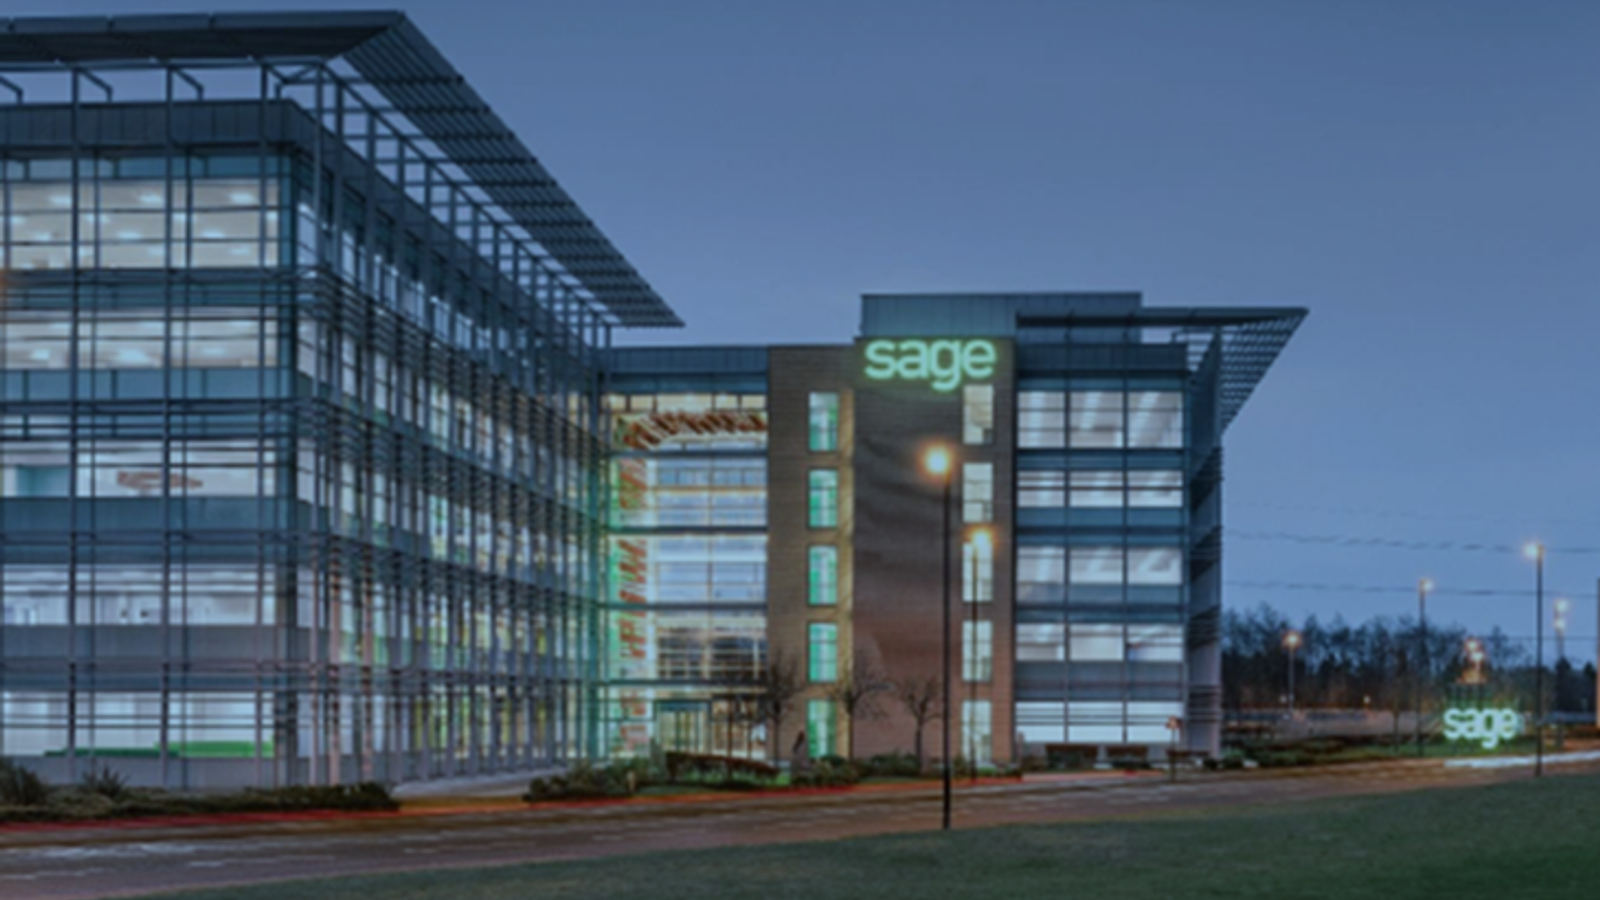 Sage mencapai penjualan cloud senilai £1 miliar – tetapi raksasa perangkat lunak Inggris itu membagi pendapat di antara para investor |  Berita bisnis